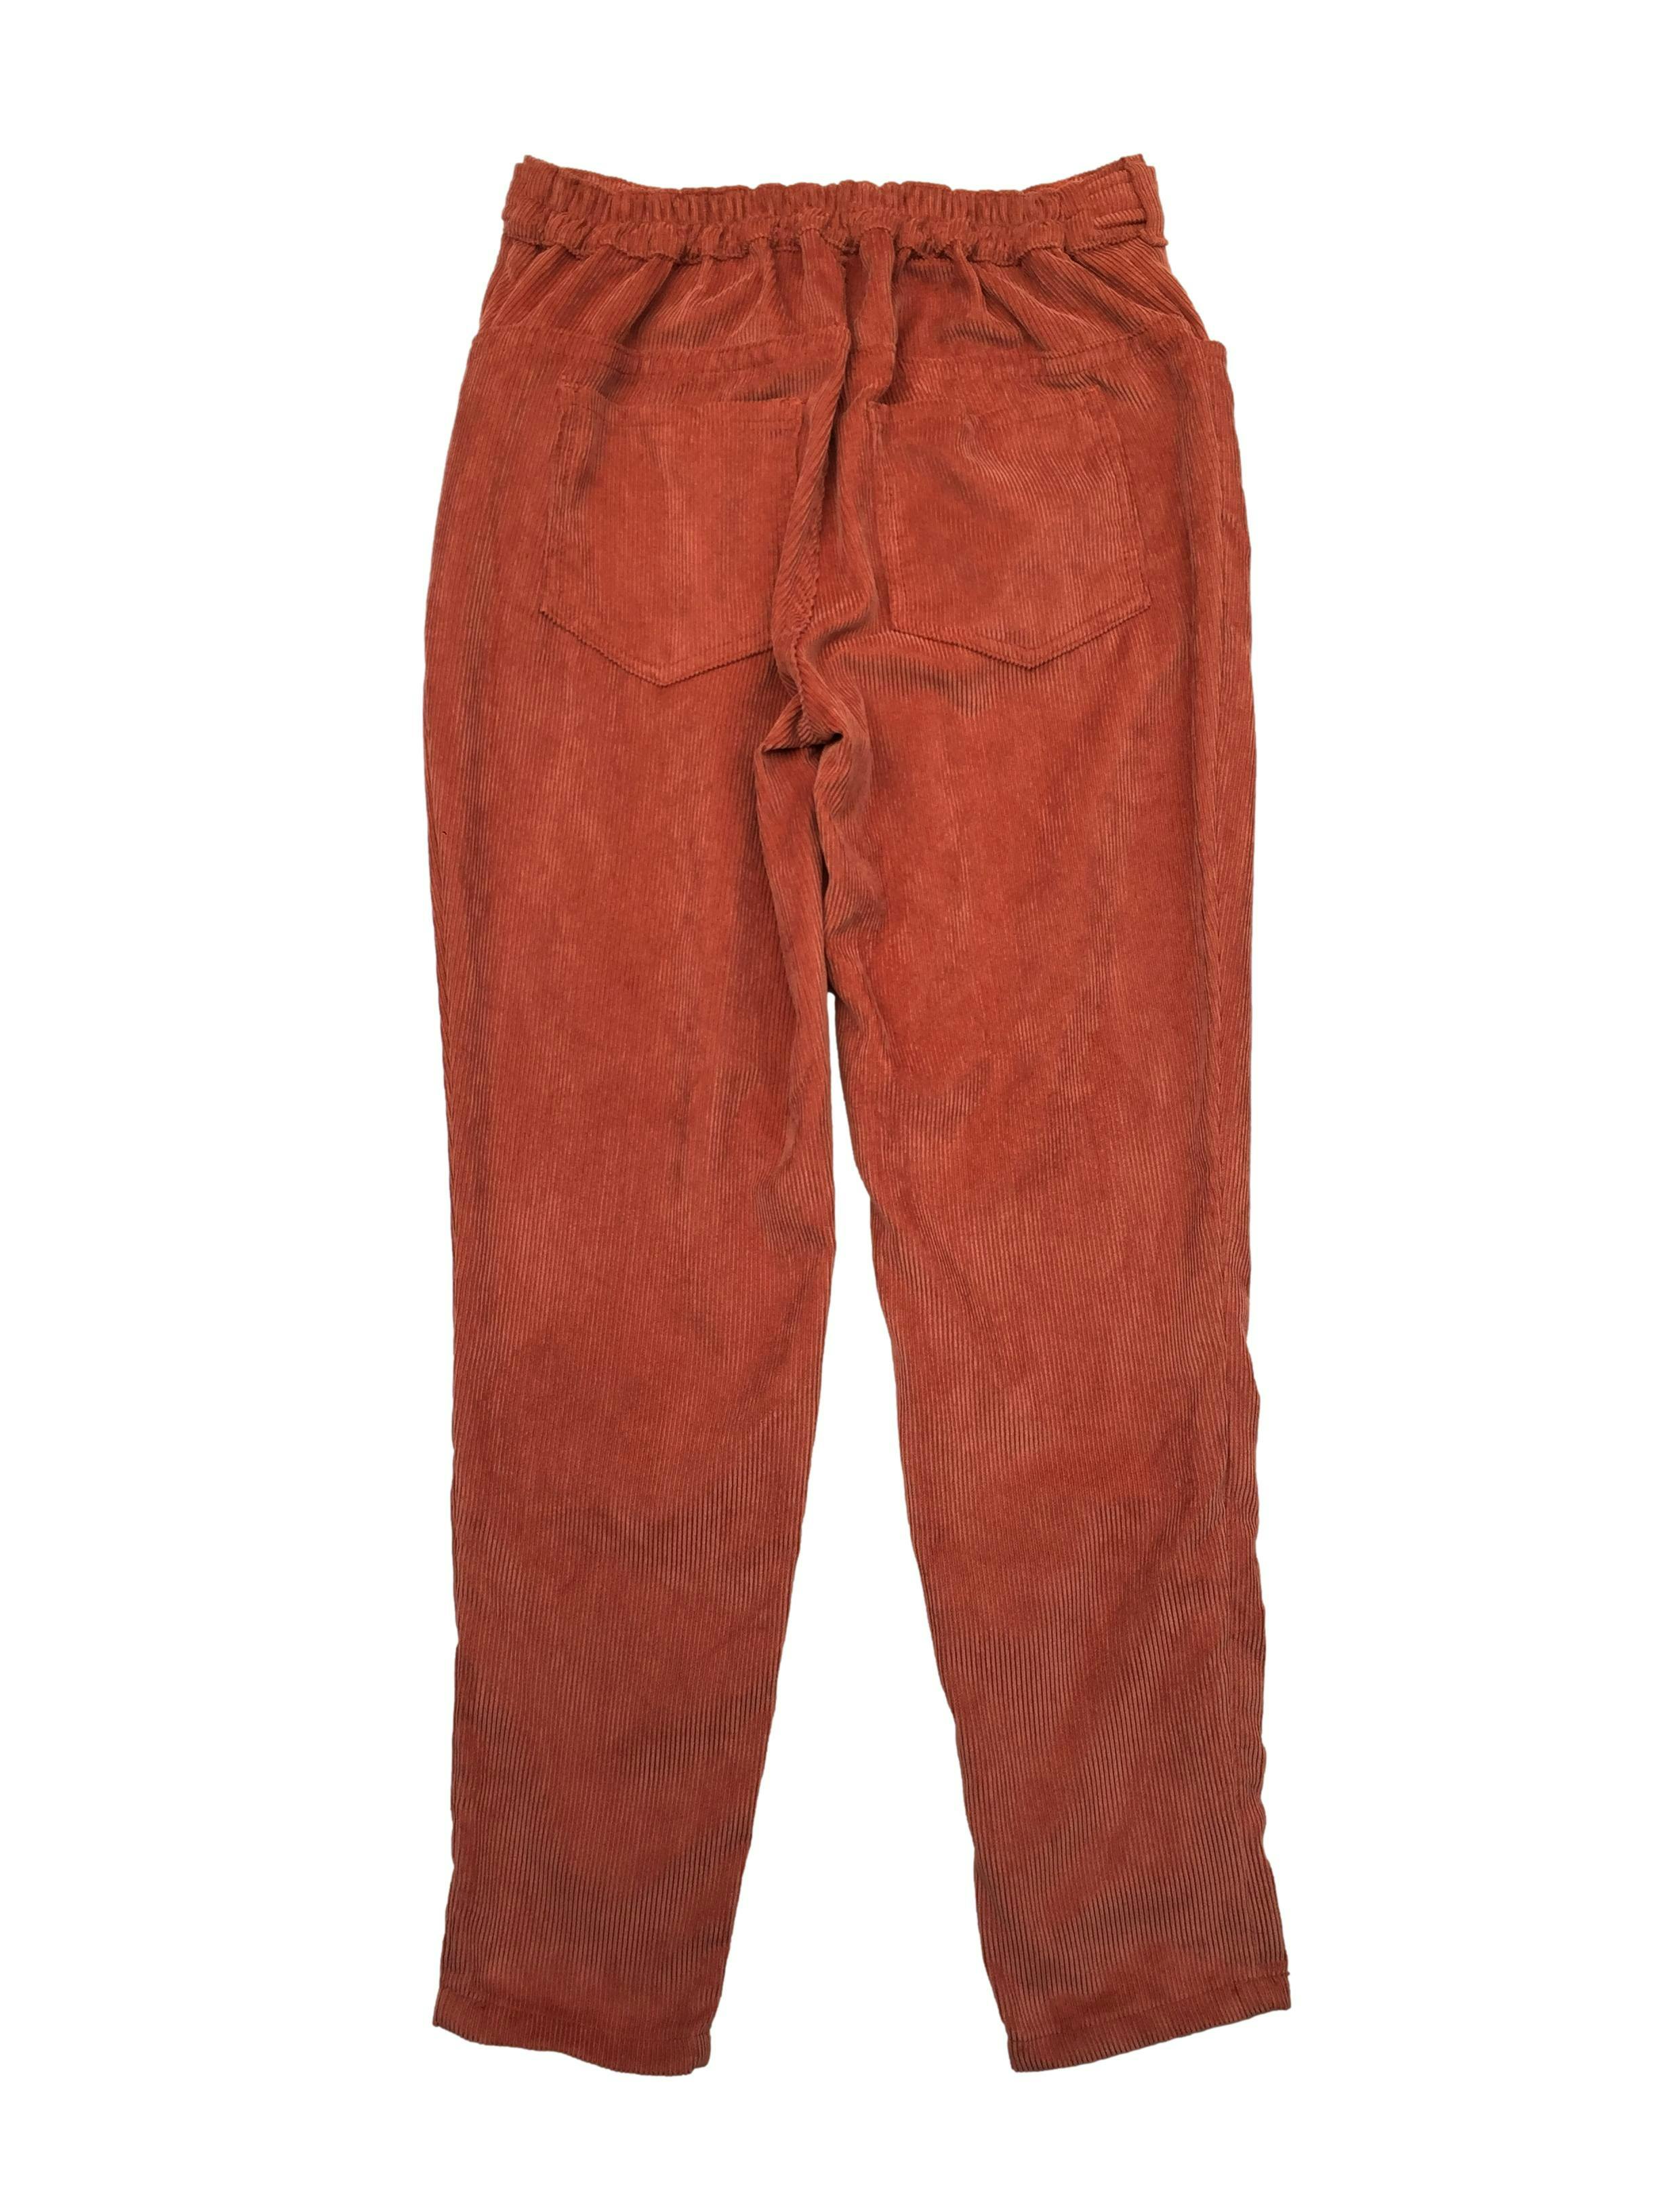 Pantalón de corduroy naranja, cote recto con 4 bolsillos y pretina posterior elástica regulable con botones. Cintura 70cm sin estirar, Largo 92cm.